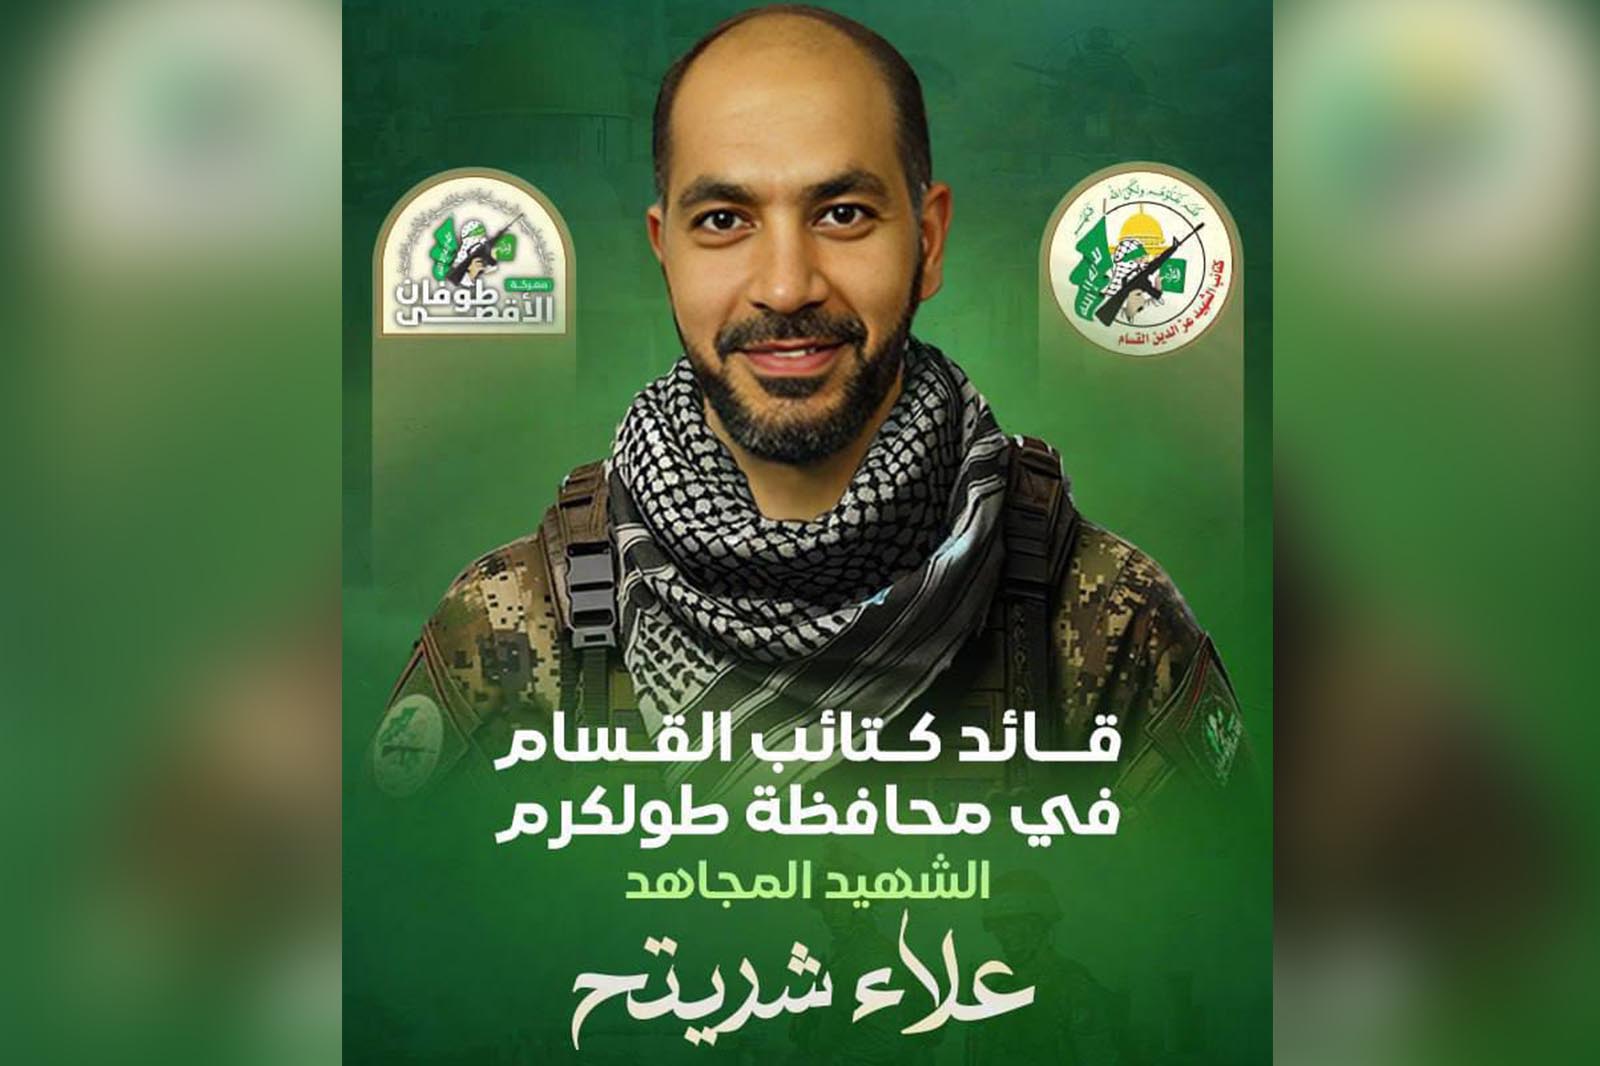 القائد الشهيد علاء شريتح في وصيته: عدونا لا يفهم إلا لغة الحراب والرصاص